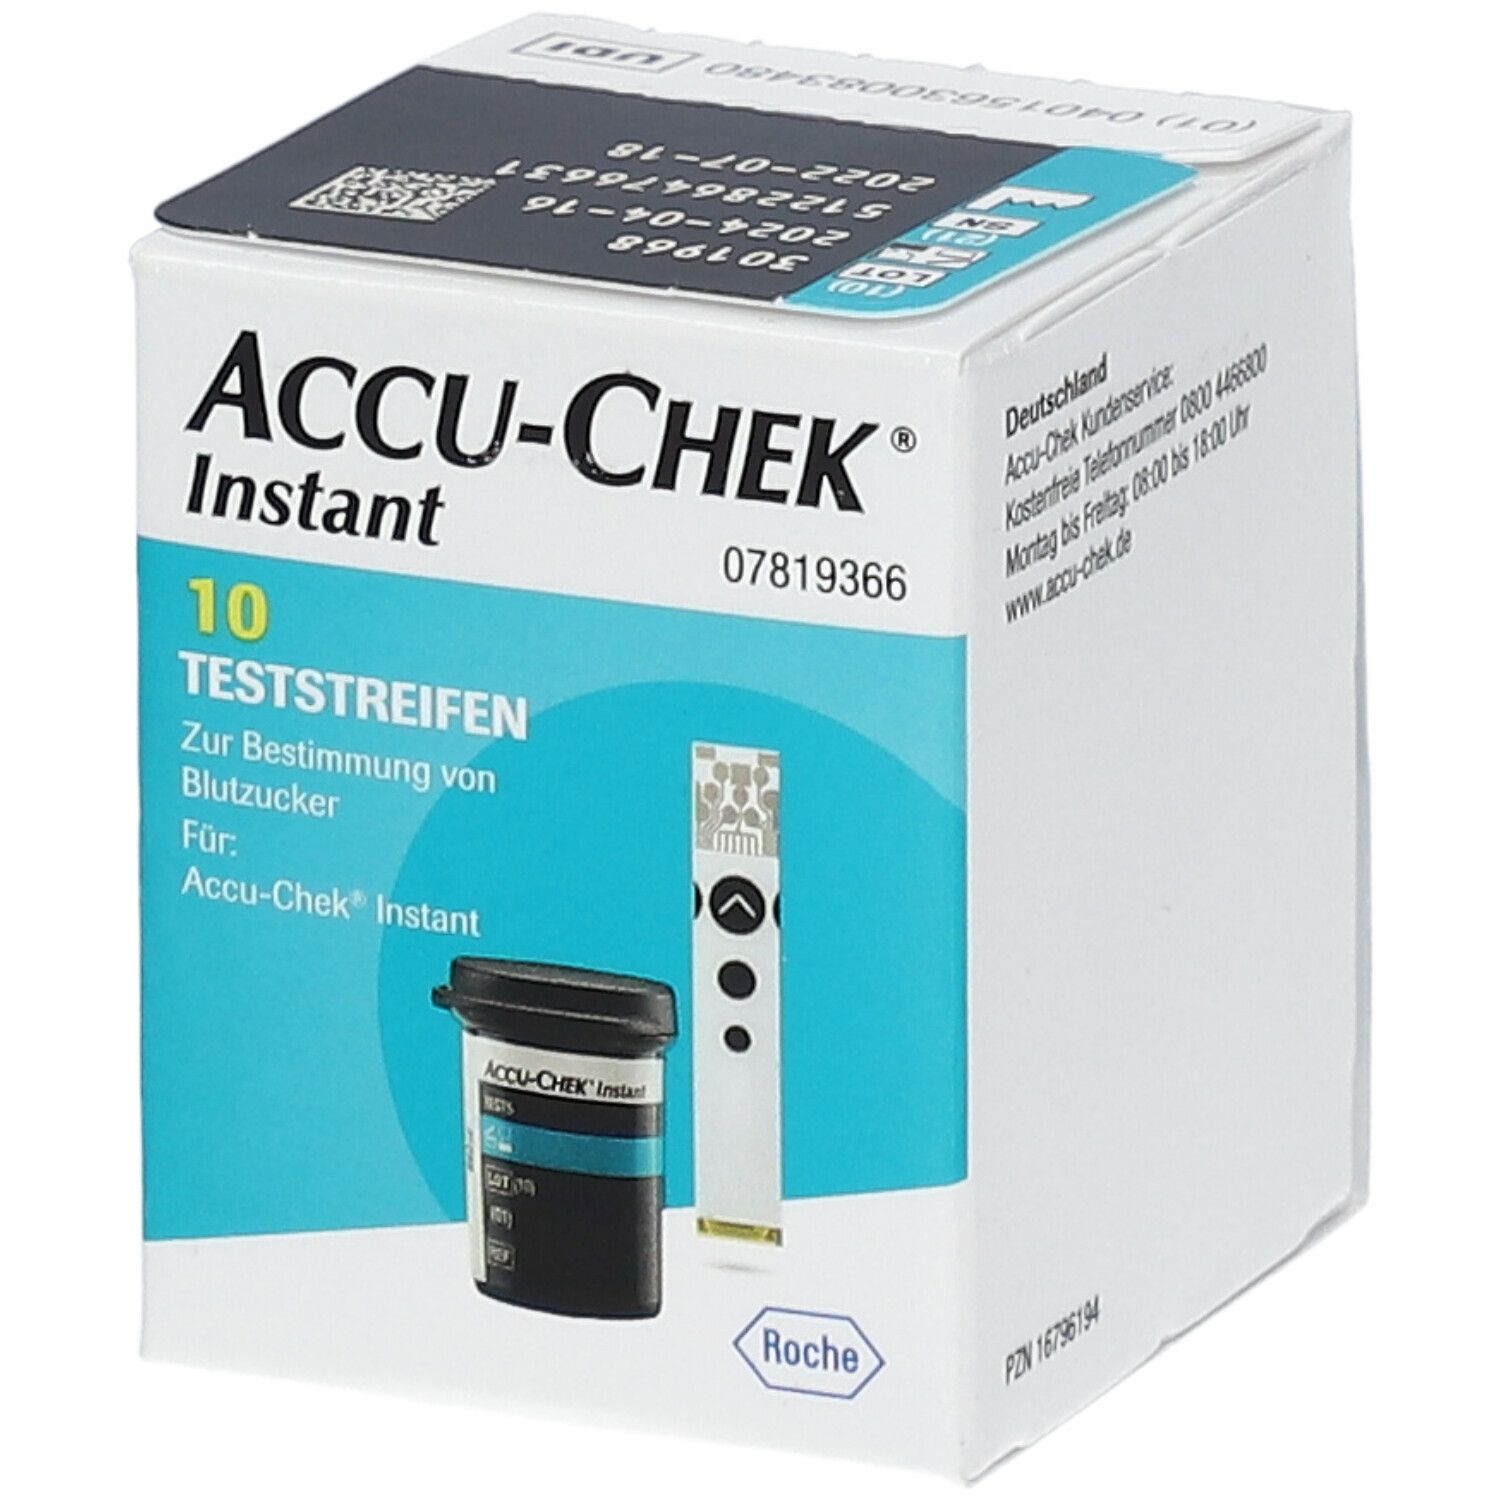 Accu-Chek® Instant test strips